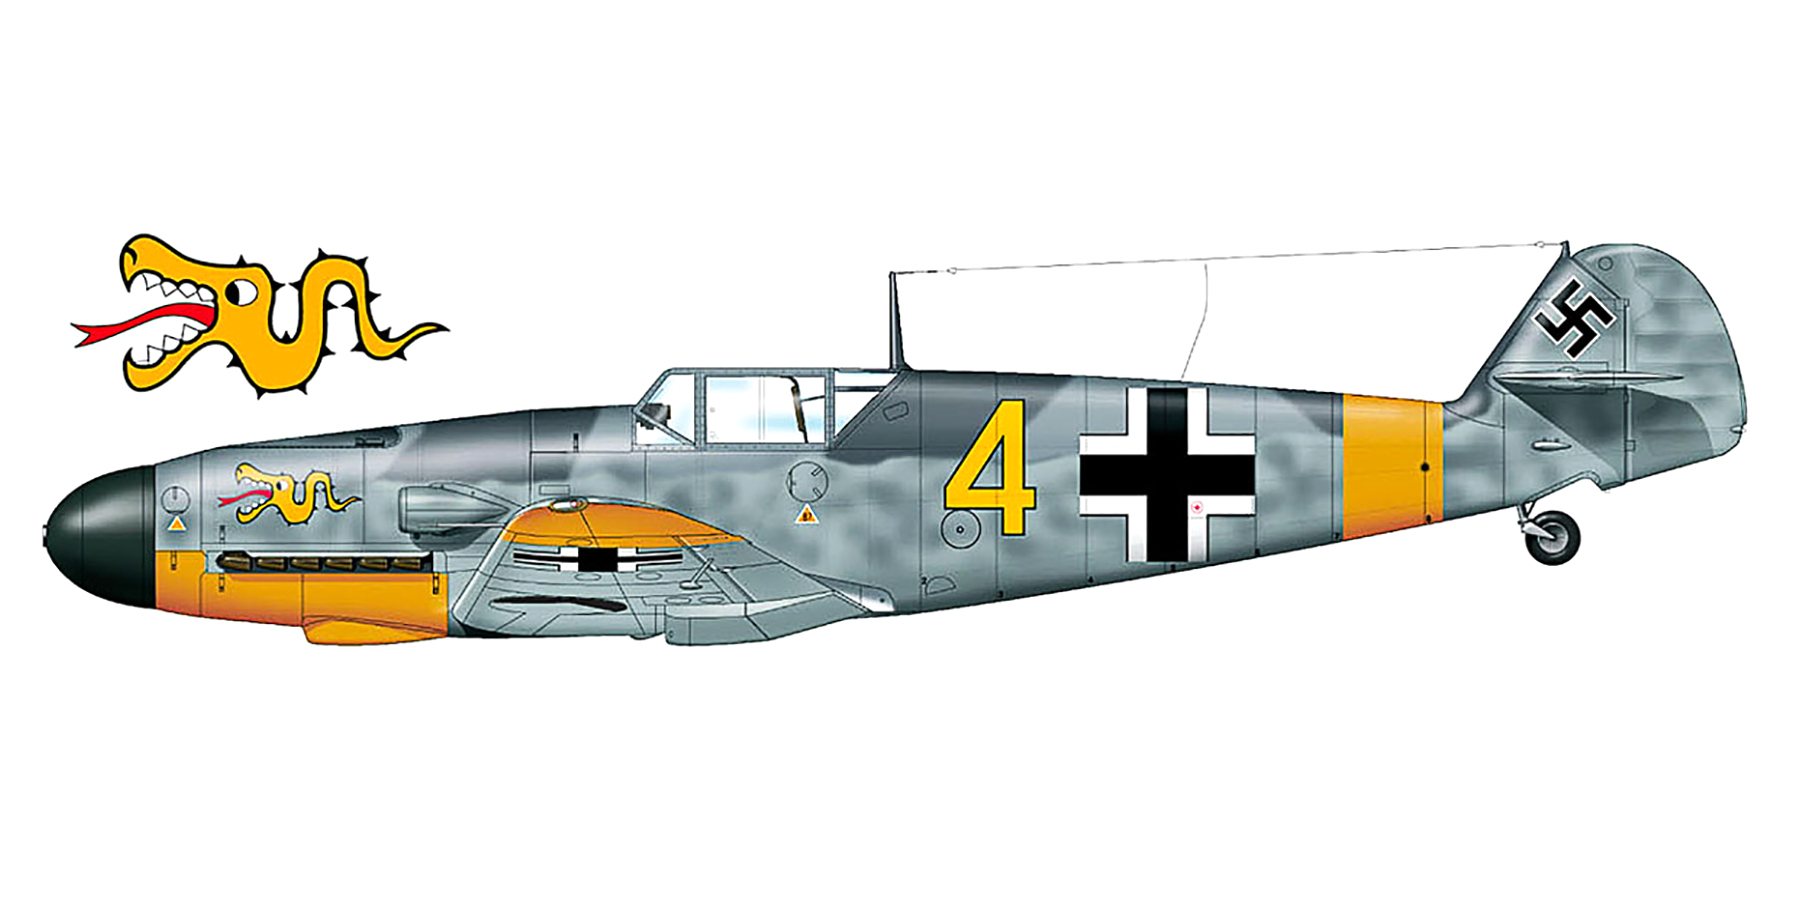 Messerschmitt Bf 109F2 3.JG3 Yellow 4 Heinz Schmidt WNr 8980 shot down Keiv Russia 20th Jul 1941 0A